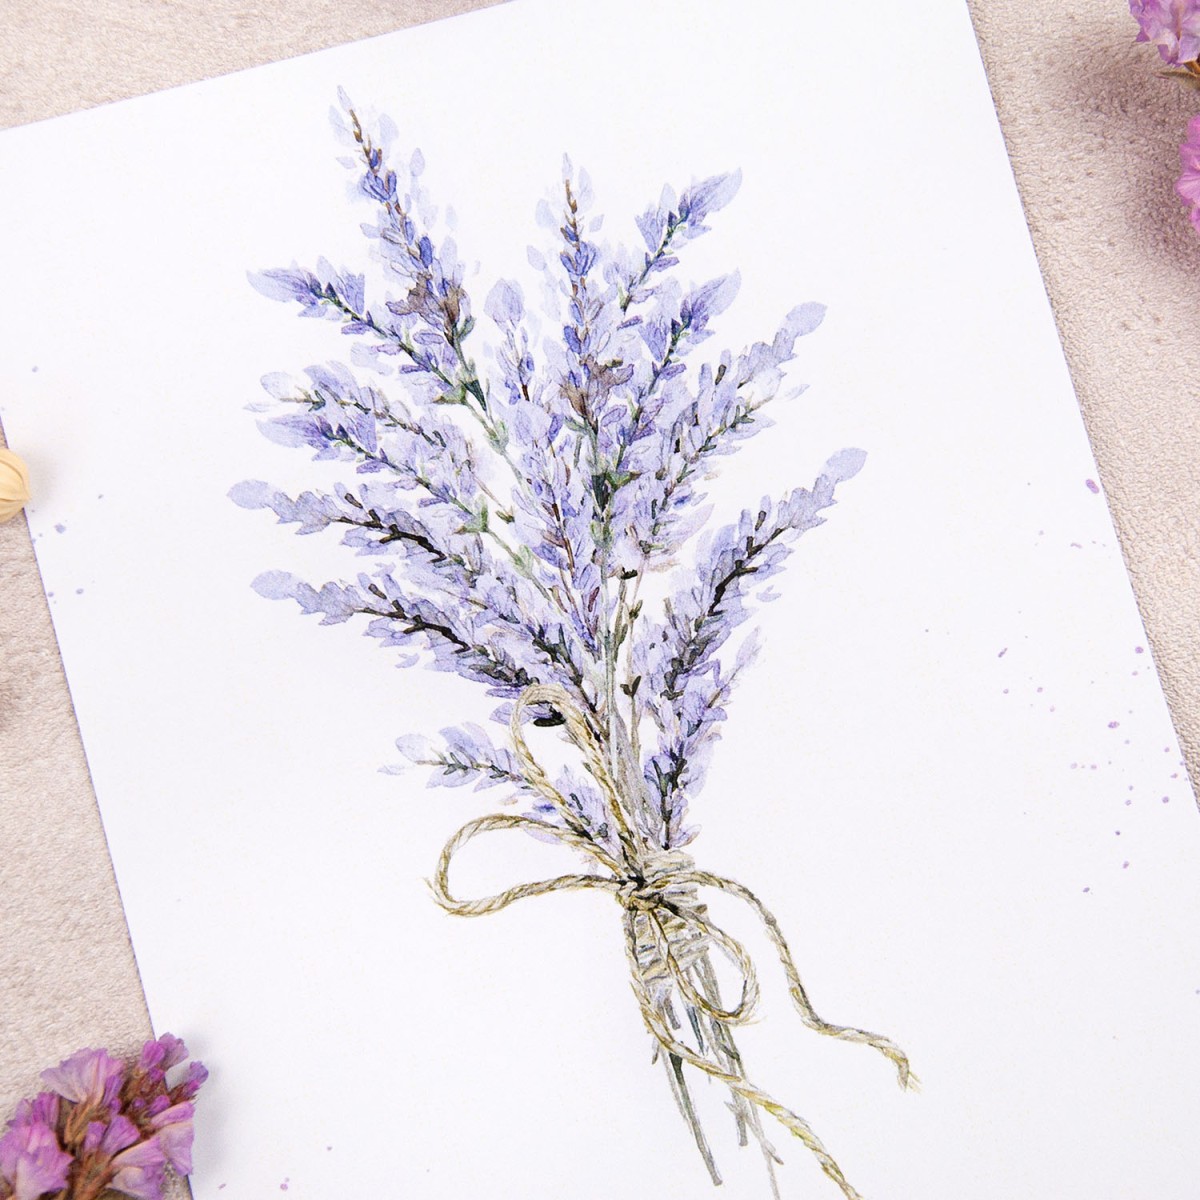 Zaproszenia ślubne fioletowe z bukietem lawendy do własnoręcznego uzupełnienia - Lavender Flower - LAST MINUTE